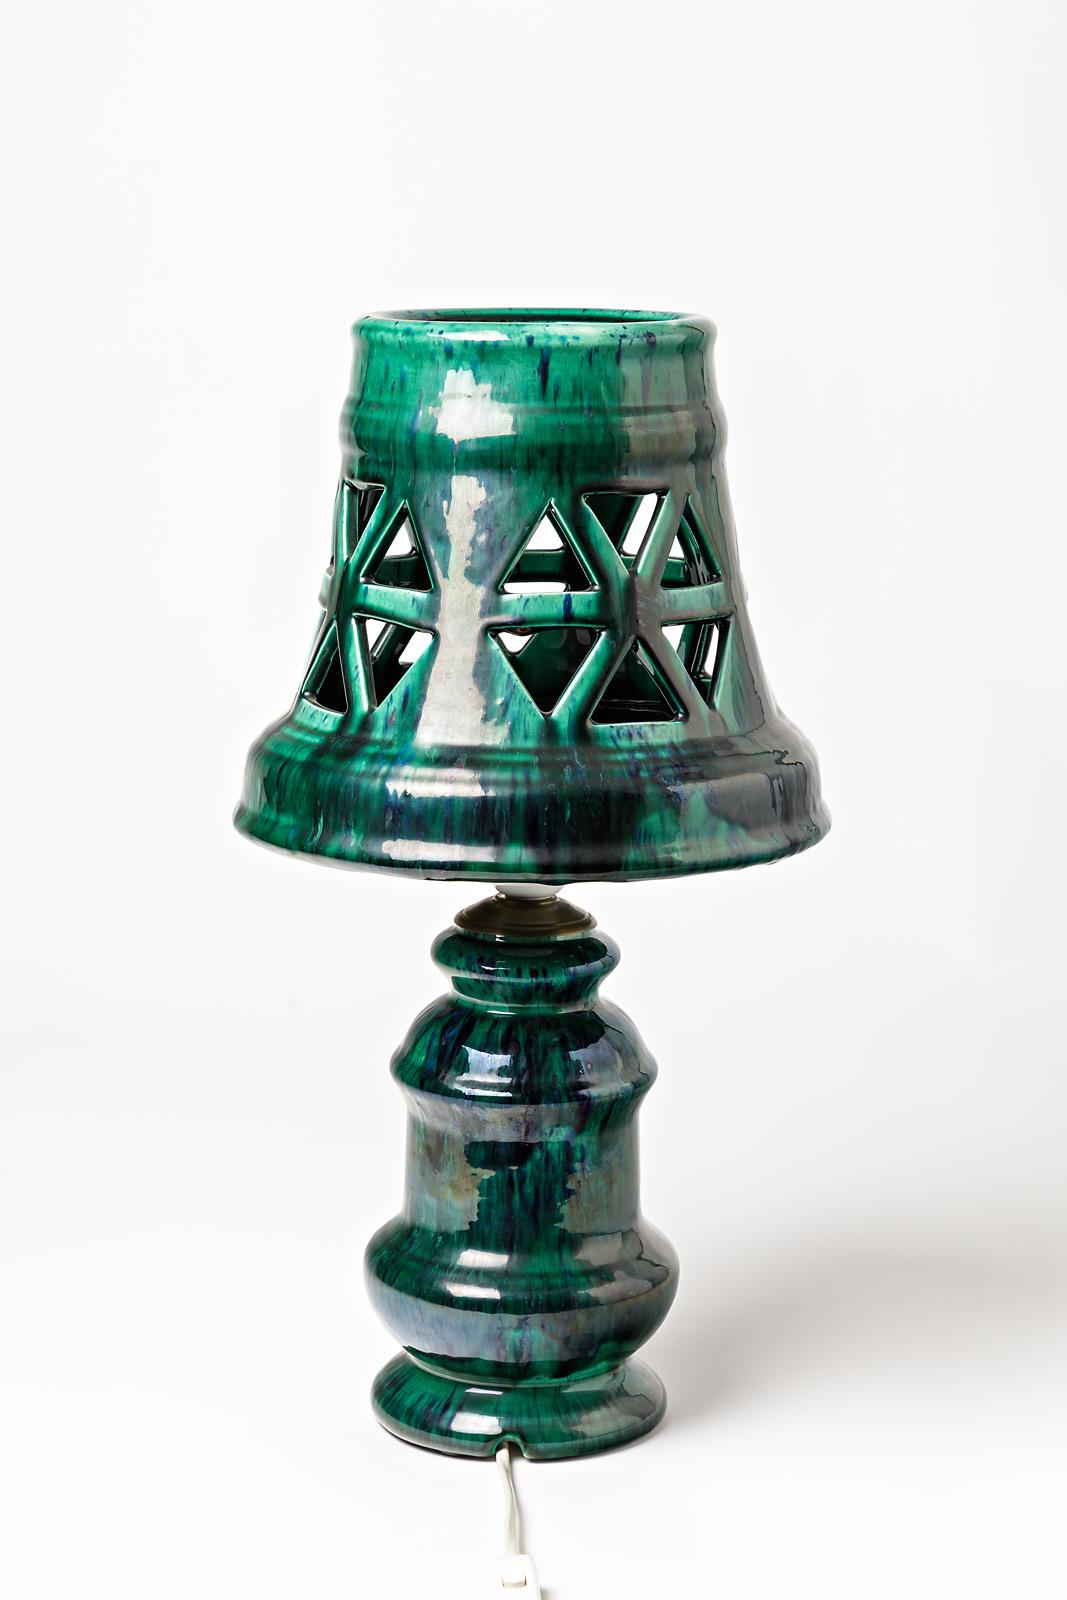 Lampe en céramique avec décoration en glaçure verte.
Conditions d'origine parfaites.
Signé 